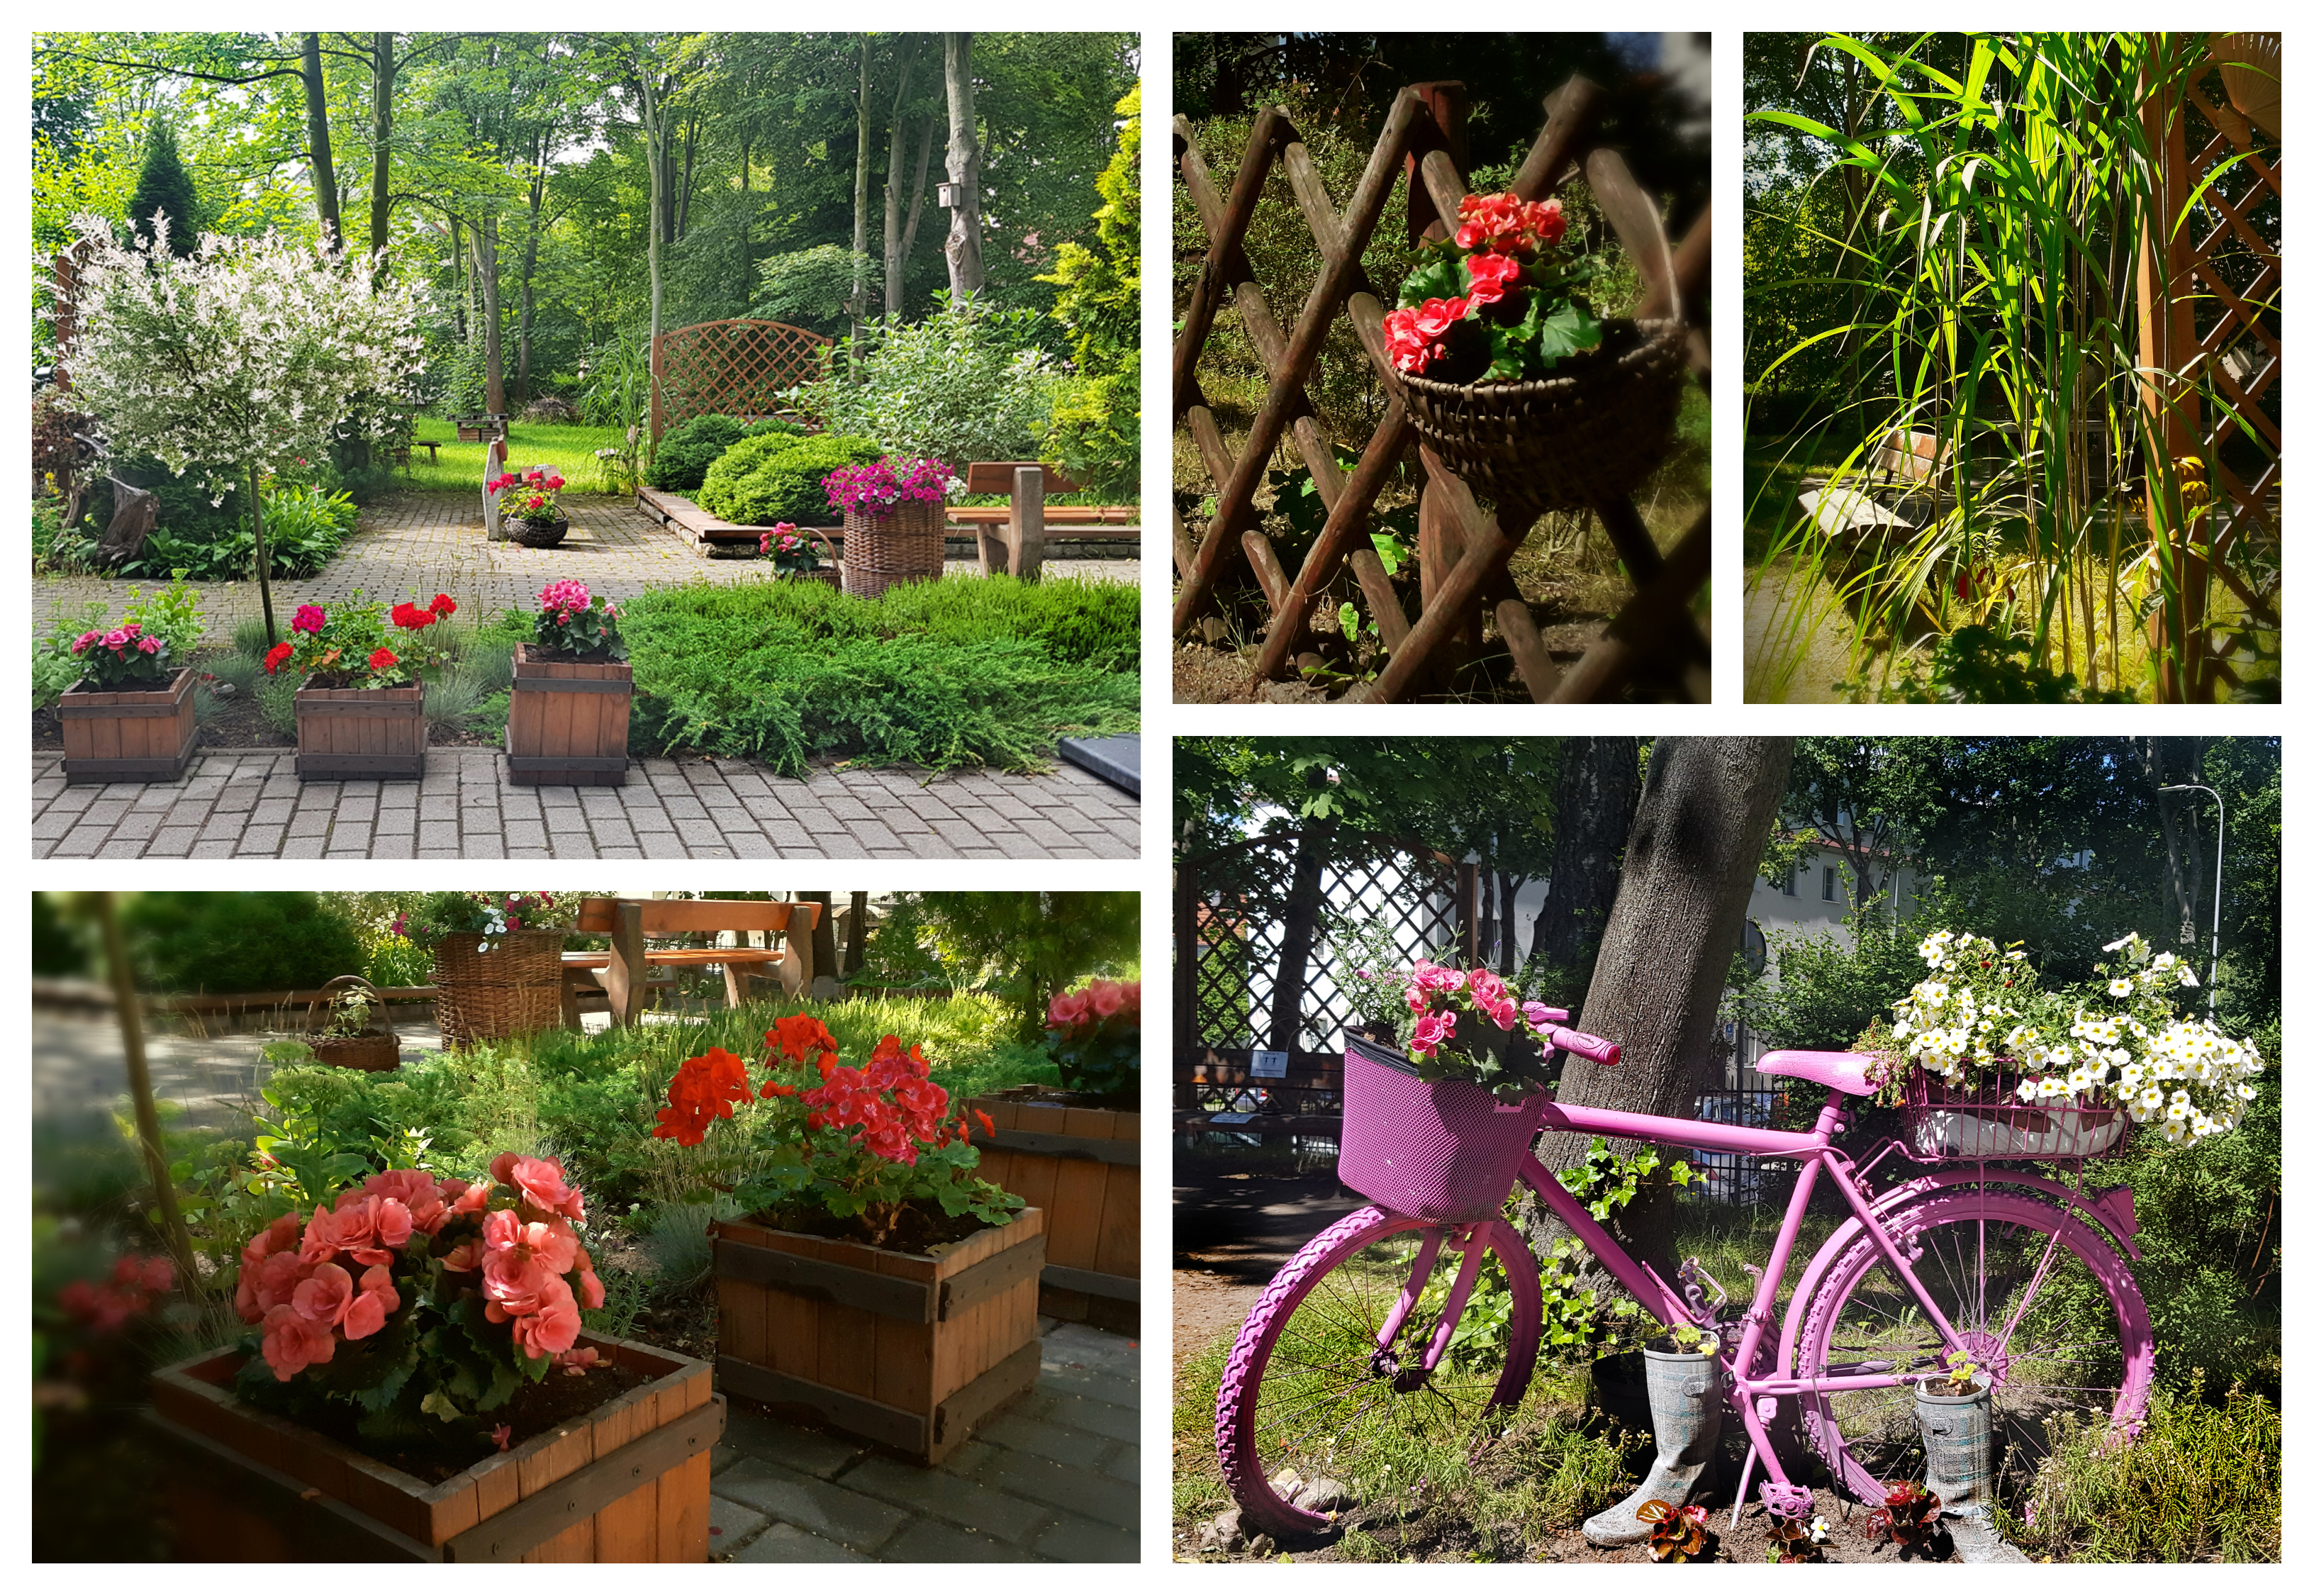 Aranżacja ogrodu przy Środowiskowym Domu Samopomocy Maczka 1, w której przeważają doniczki z begoniami i pelargoniami oraz różowy rower pełniący rolę kwietnika